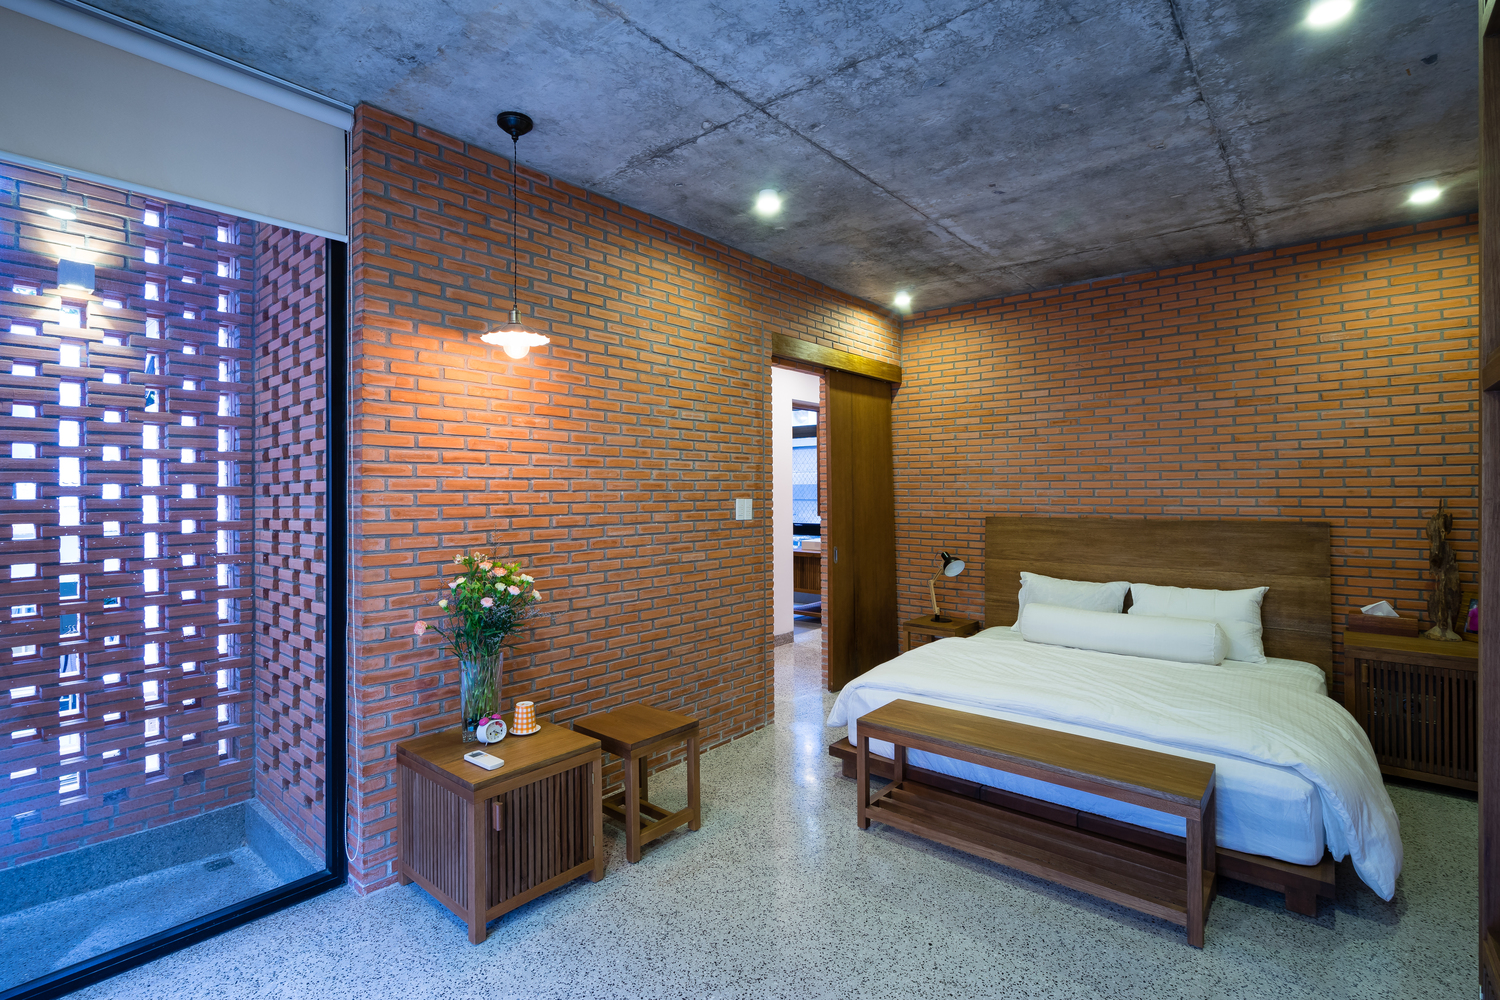 hình ảnh toàn cảnh phòng ngủ master ở lầu 1 nhà phố Sài Gòn